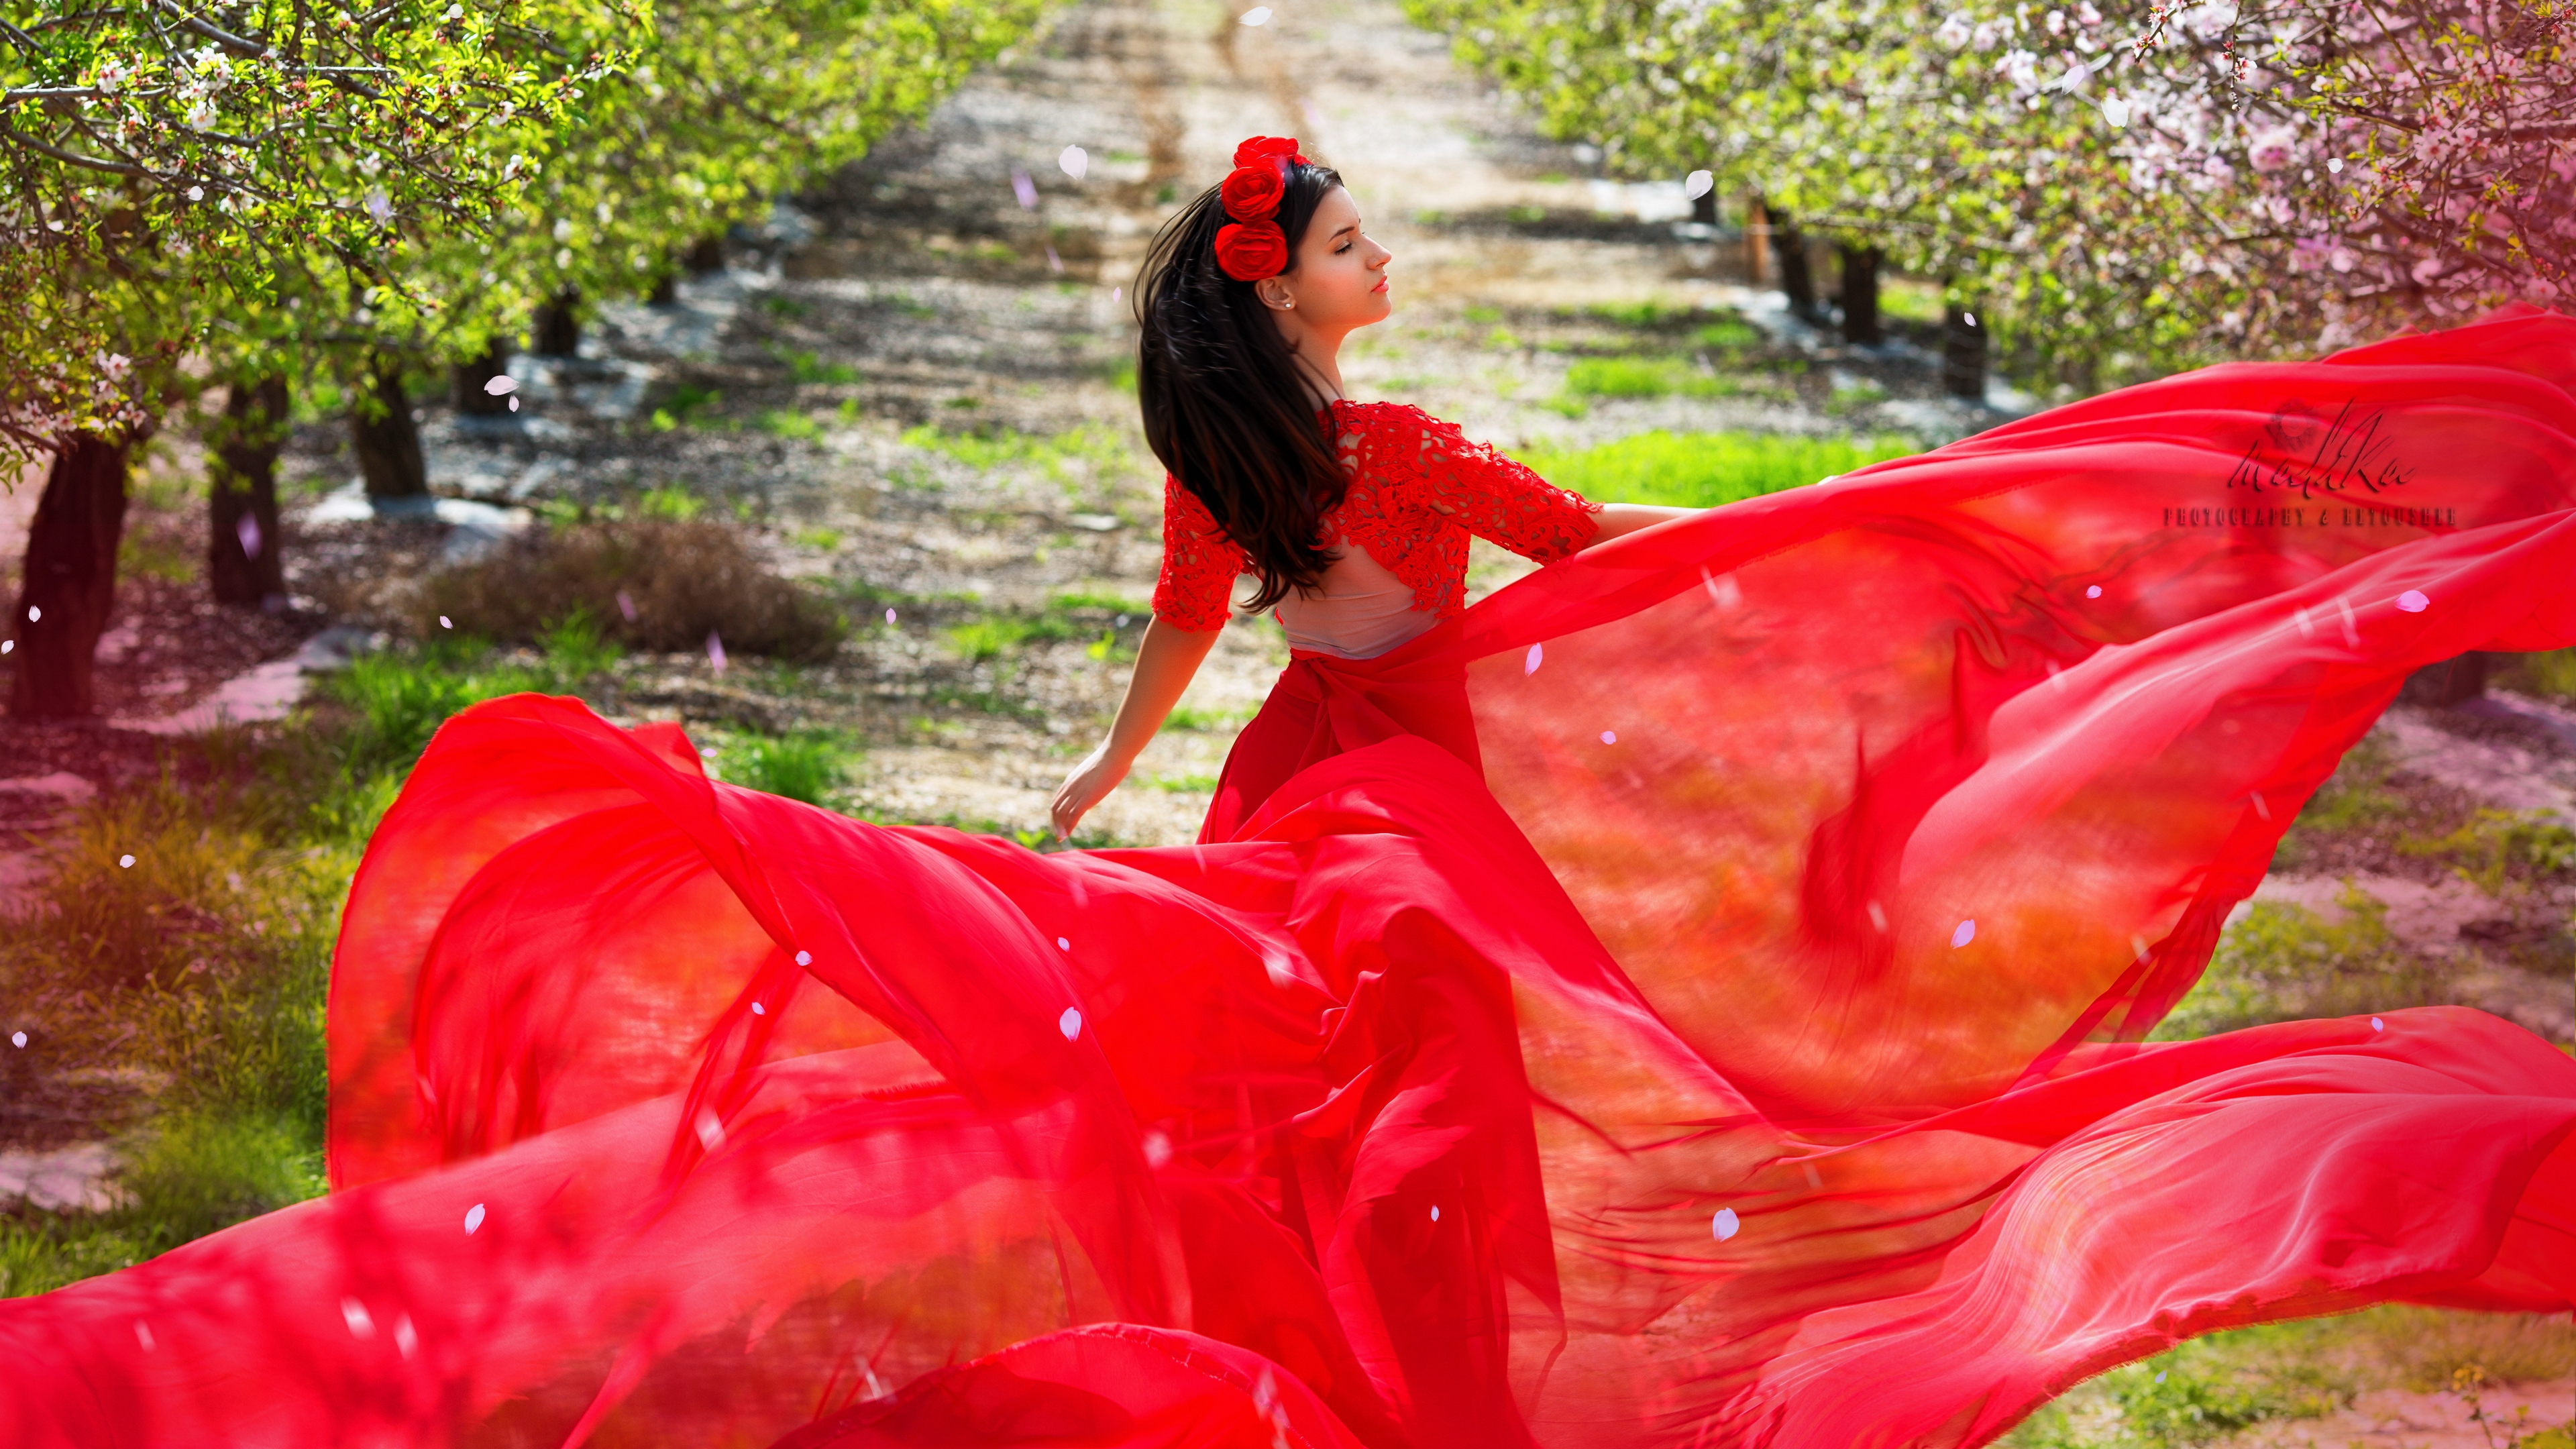 Фф душенька в красном. В Красном платье на природе. Девушка в воздушном платье. Девушка в Красном платье танцует. Брюнетка в Красном платье.